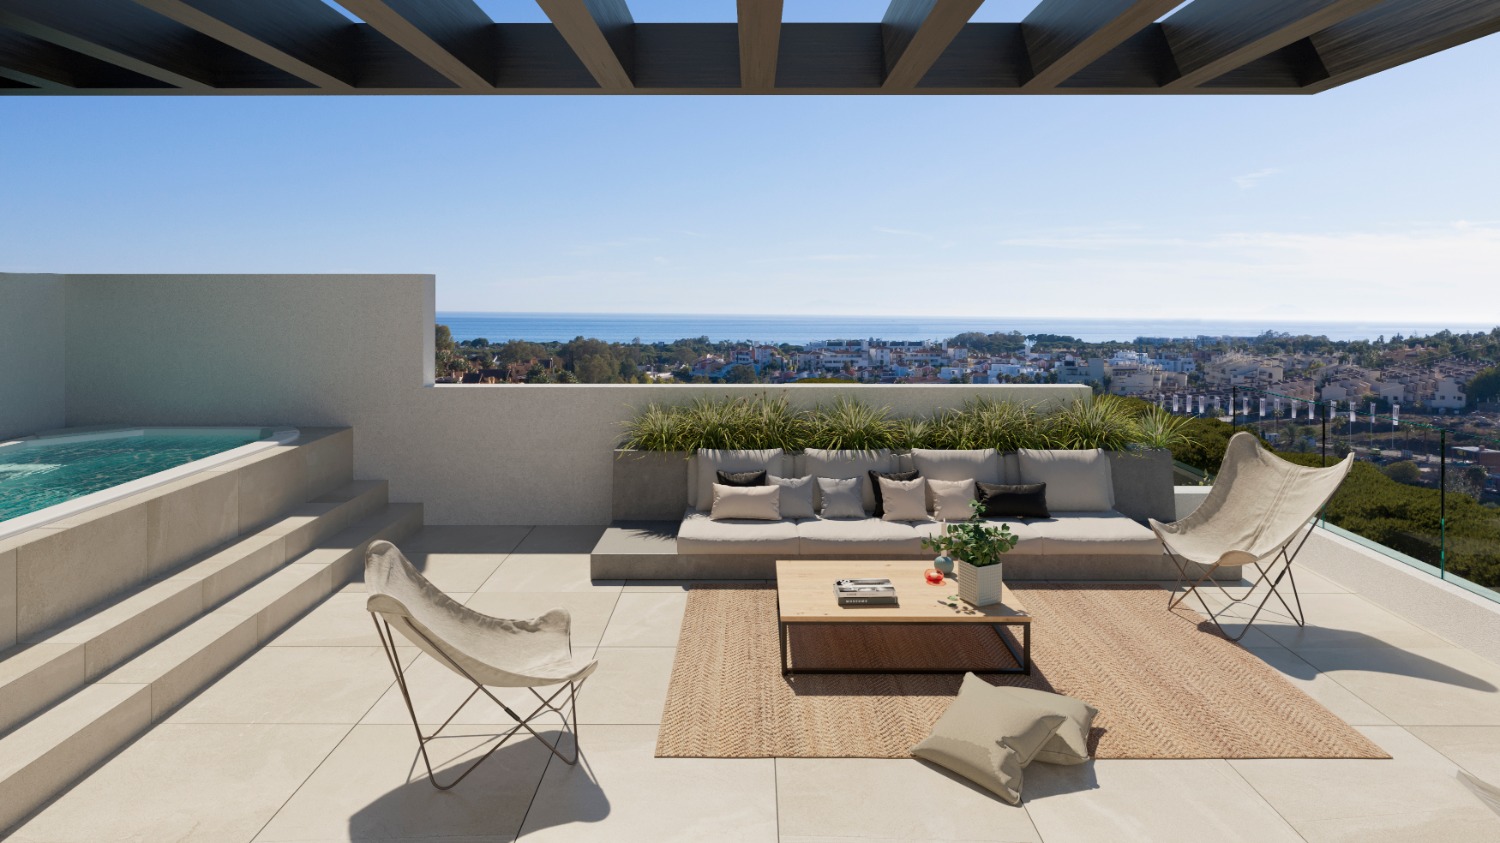 Sensació romàntica! Casa d'Obra Nova Amb terrat obert i soterrani a 714.000 euros. Calefacció per terra radiant.